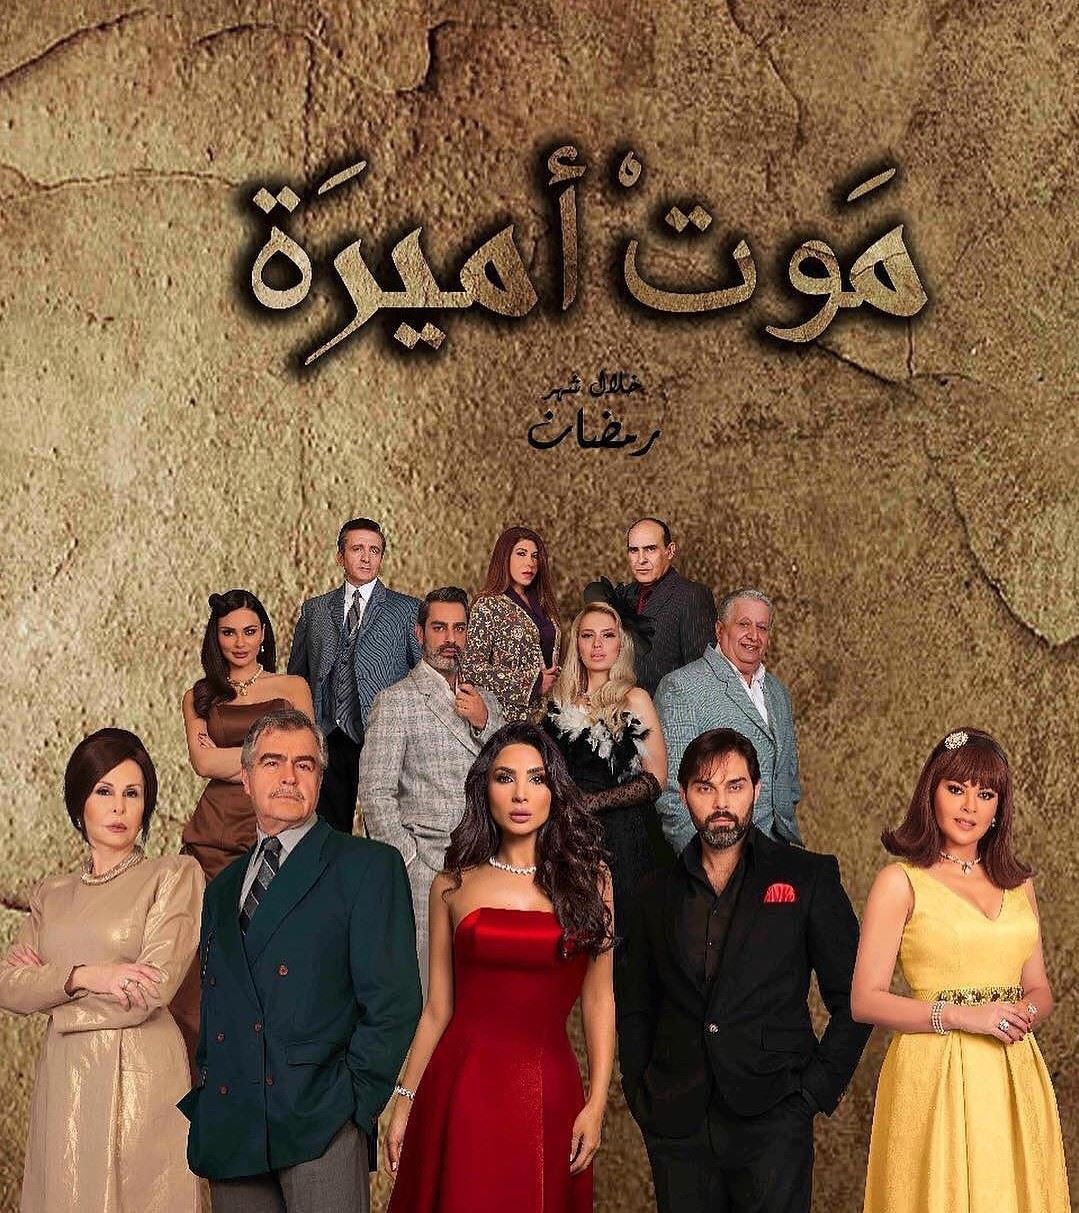 قصة وأبطال المسلسل اللبناني "موت أميرة" 